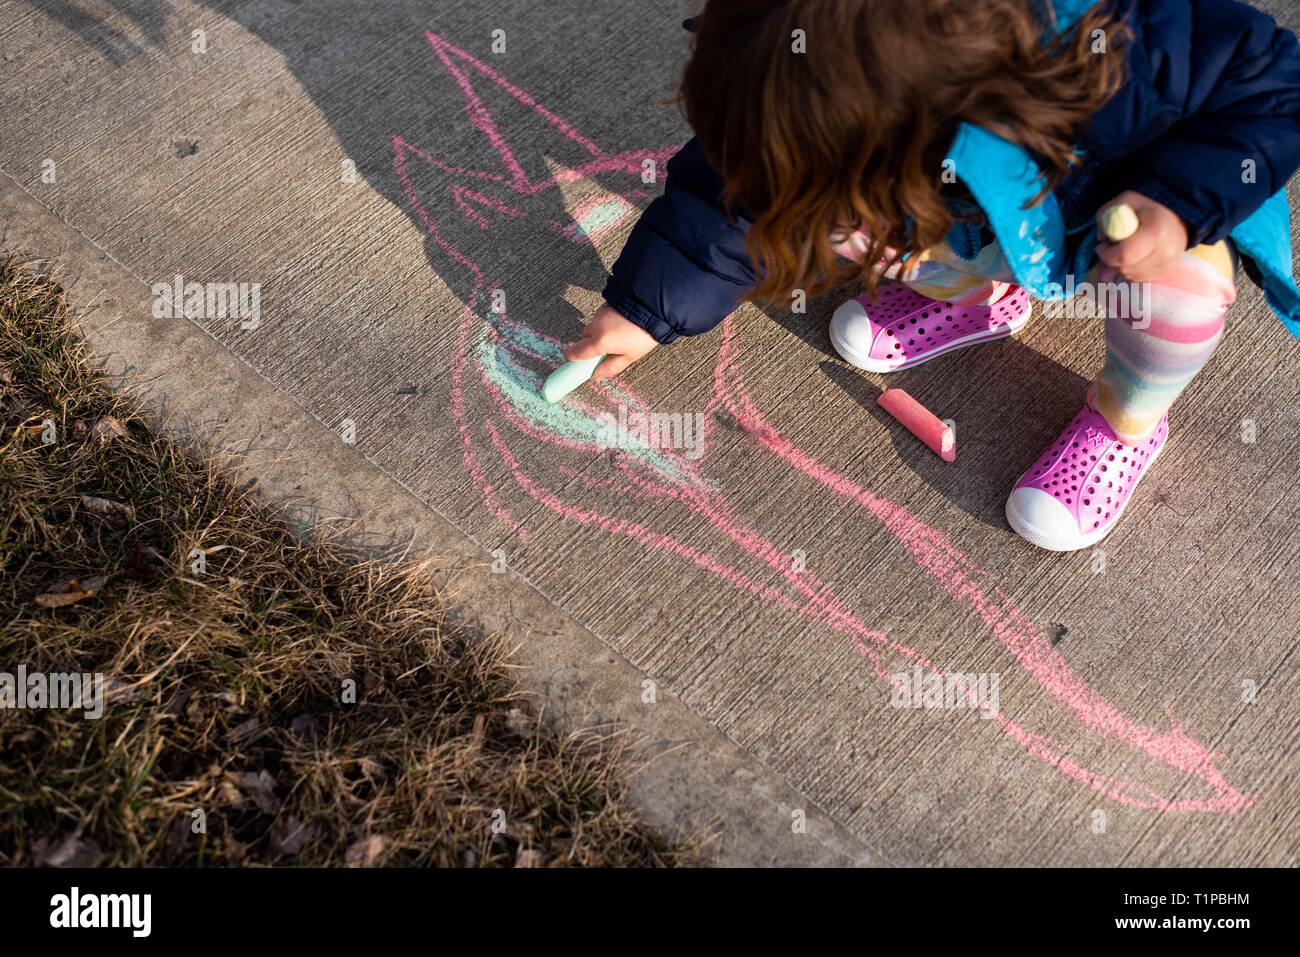 Auf ein 4-jähriges Mädchen Holding sidewalk Chalk auf einem Bürgersteig im Frühjahr. Stockfoto